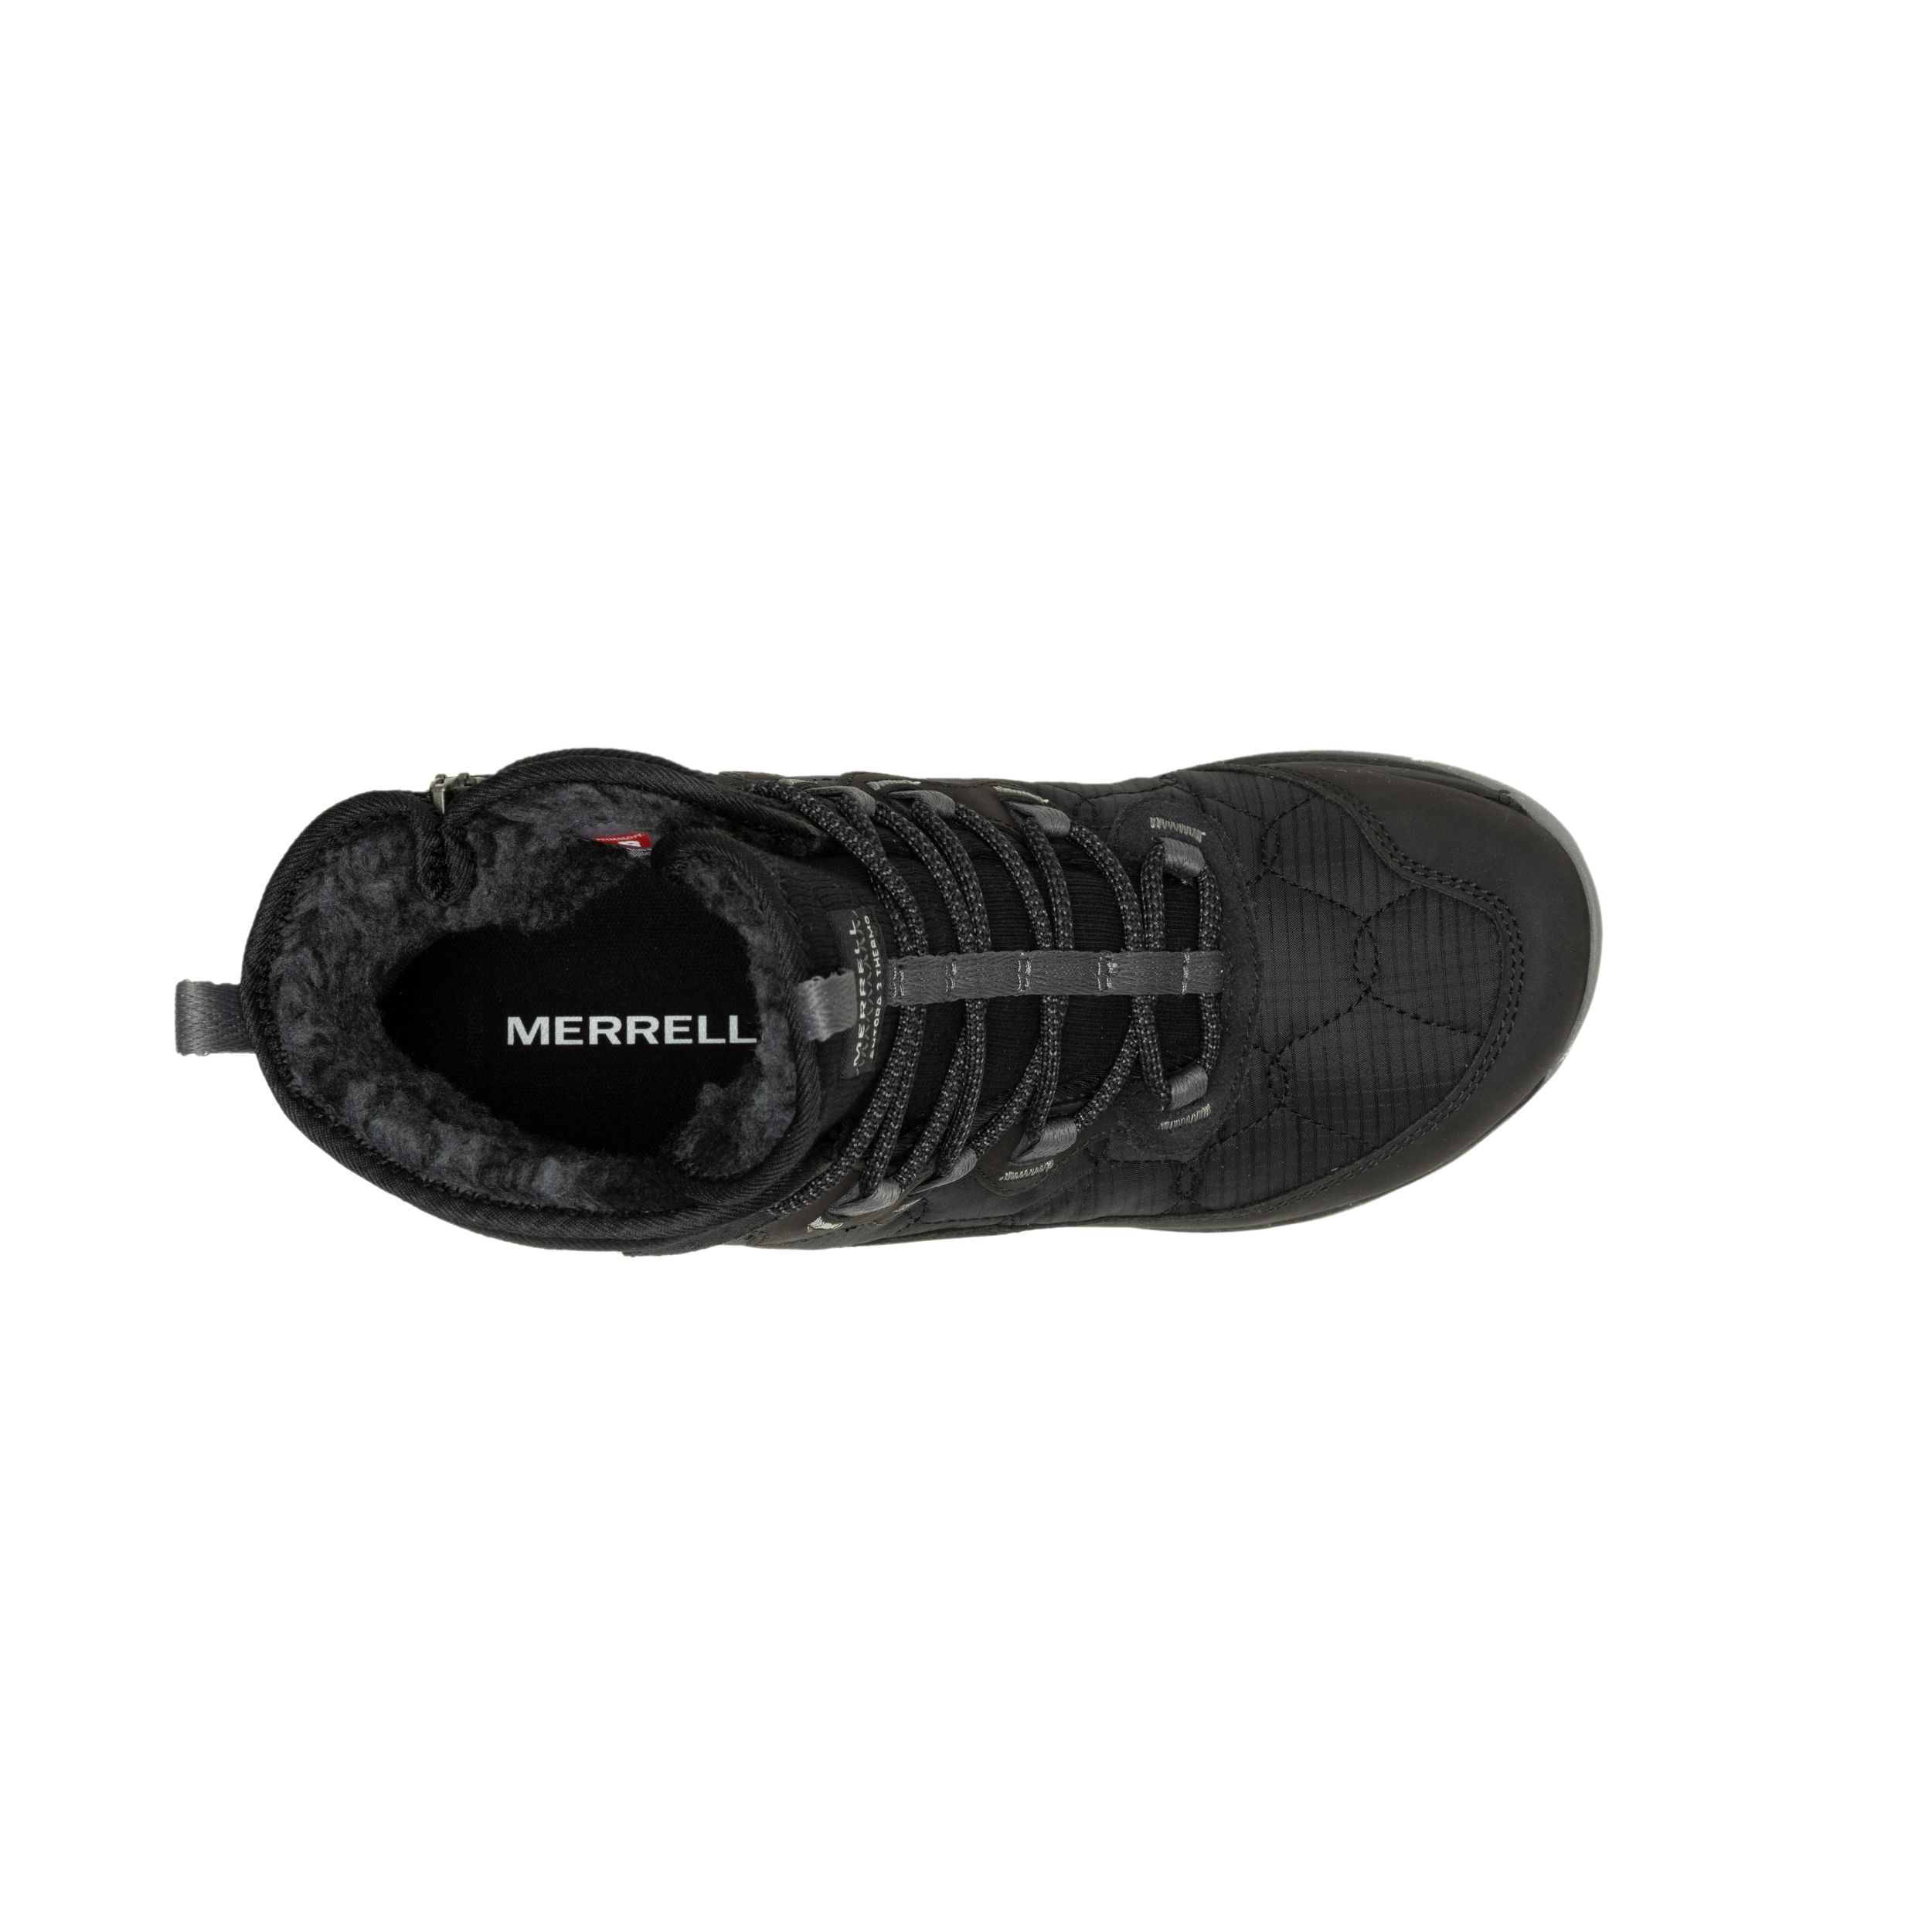 Women's Antora 3 Mid Waterproof Boot - Black/Fuchsia - Regular (B